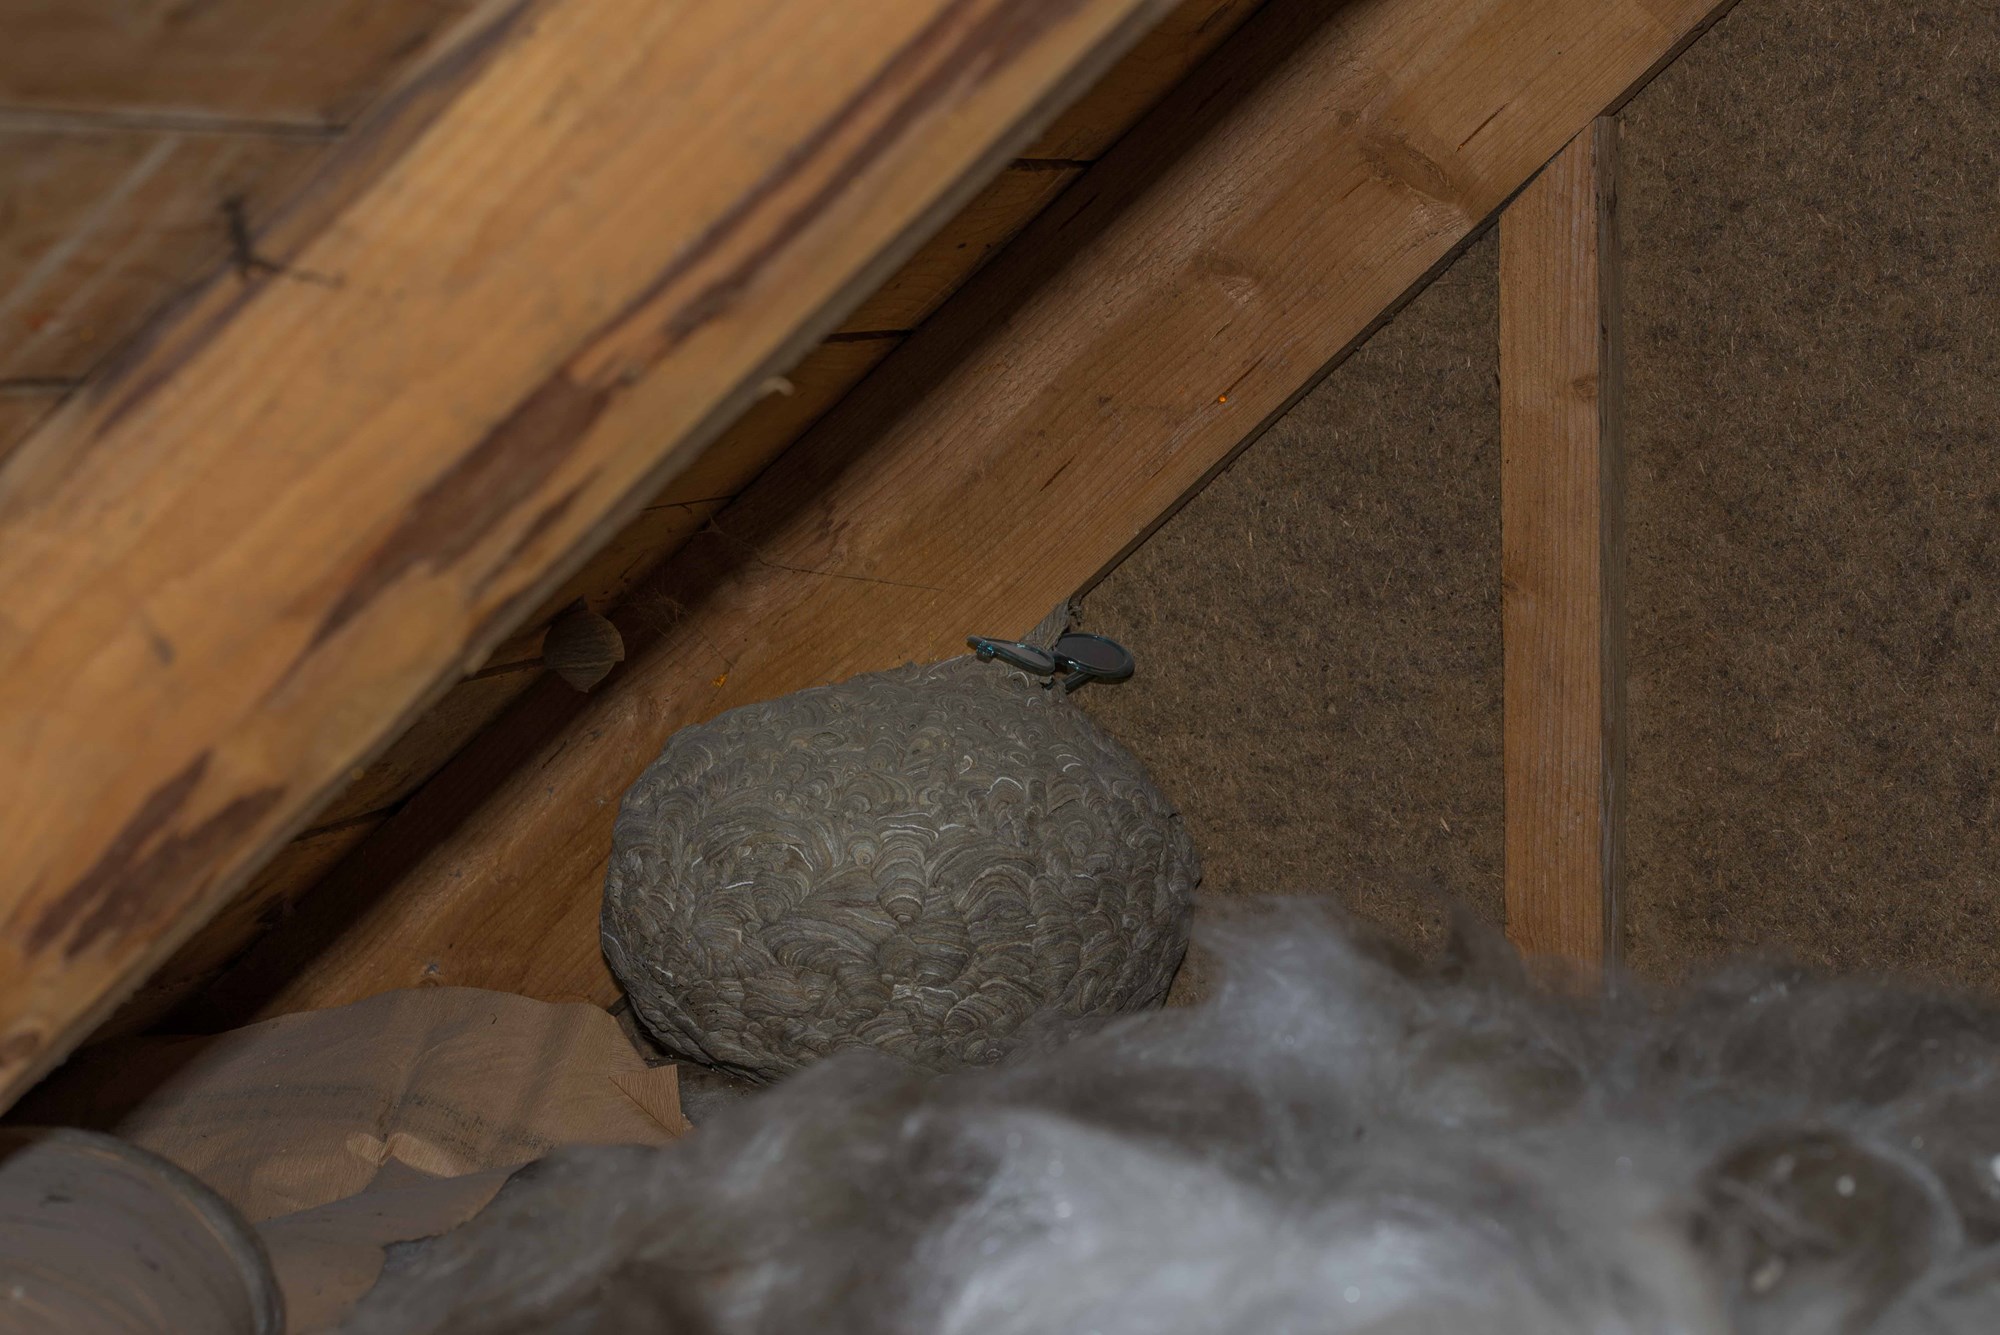 Fant det største vepsebolet jeg har sett på loftet, hva gjør jeg? - Vepsebol (1 of 1).jpg - barenstaden